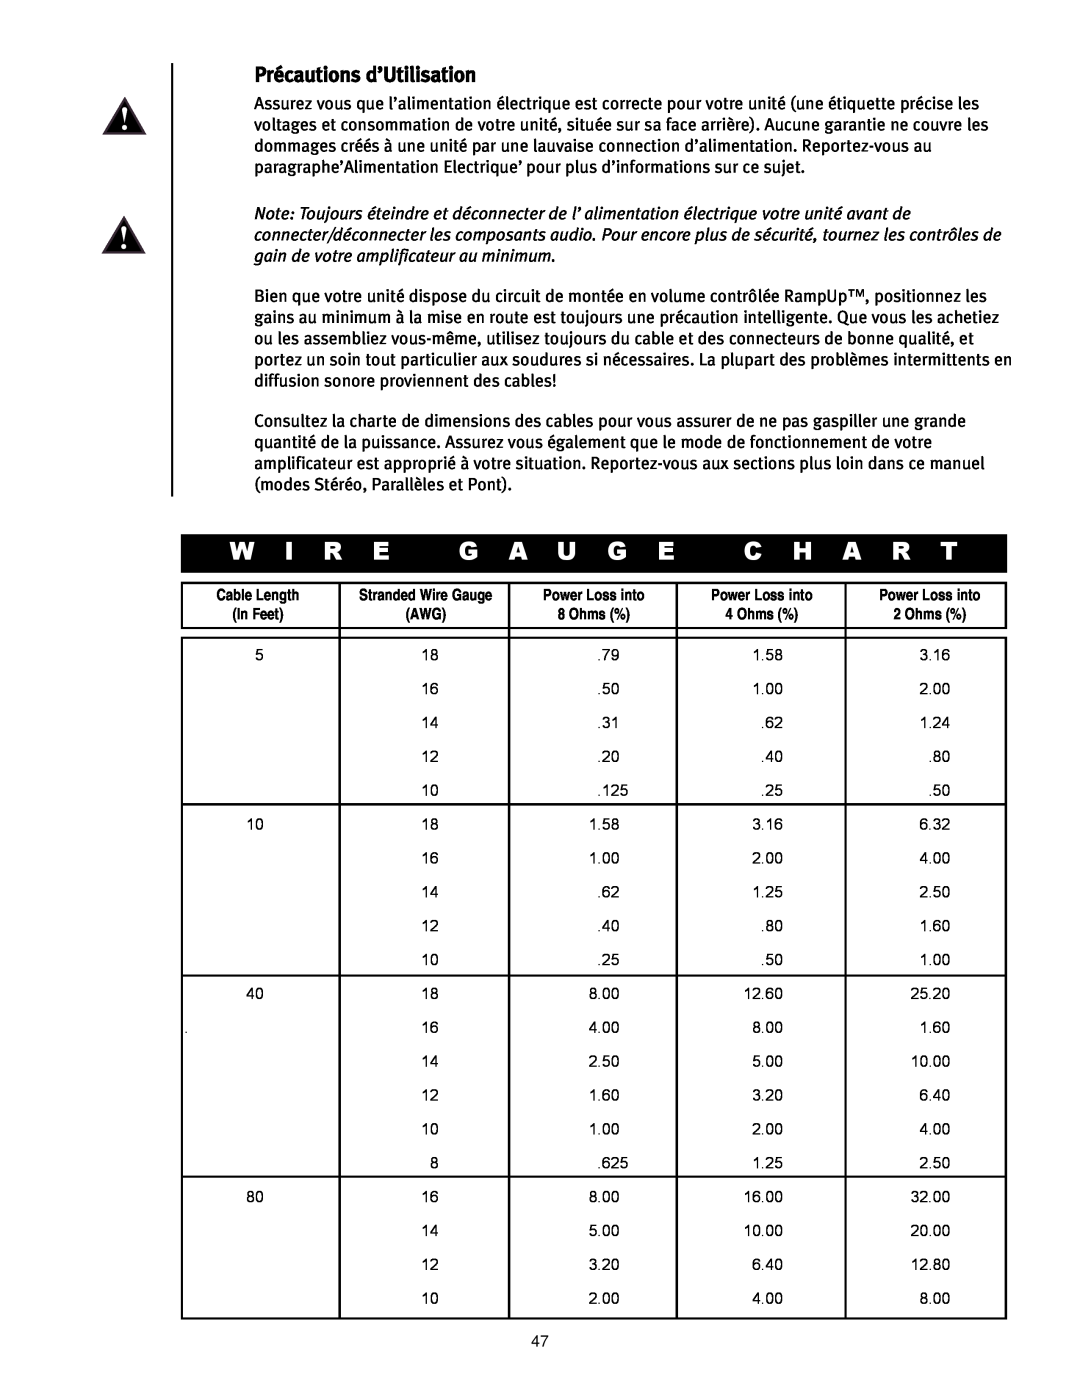 Peavey CS 800H manual Précautions d’Utilisation, W I R E, G A U G E, C H A R T 